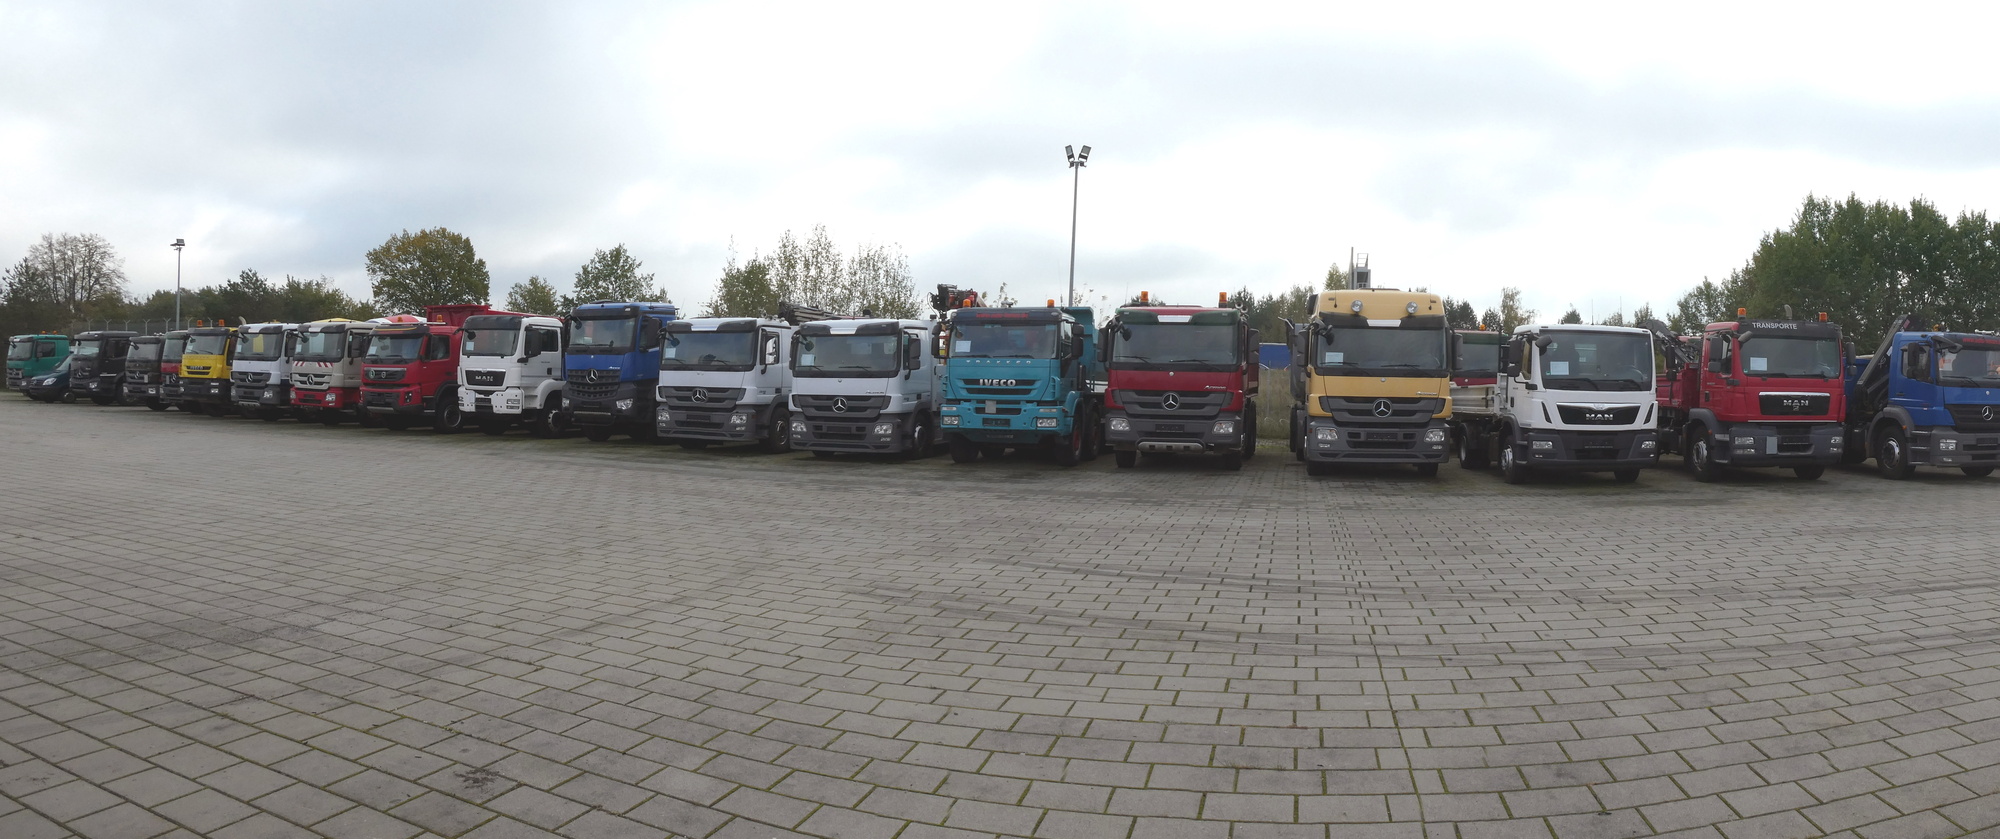 Henze Truck GmbH - Строительная техника undefined: фото 1